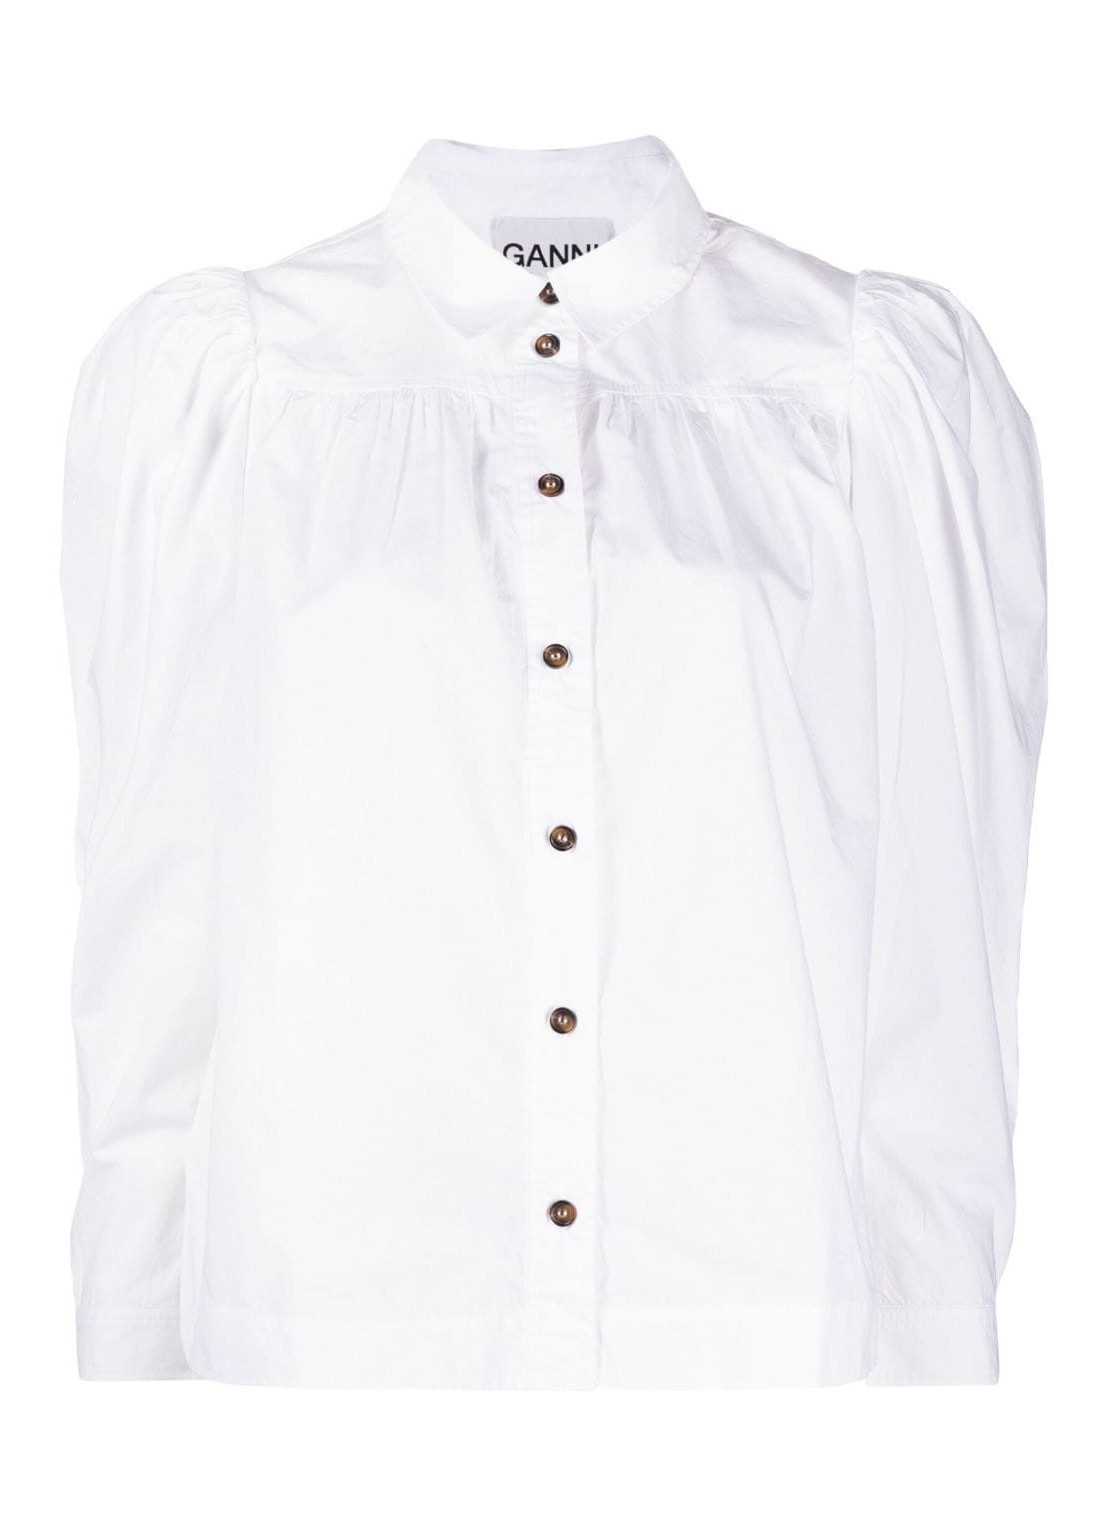 ganni cotton poplin shirt - f7958 151 Talla 36